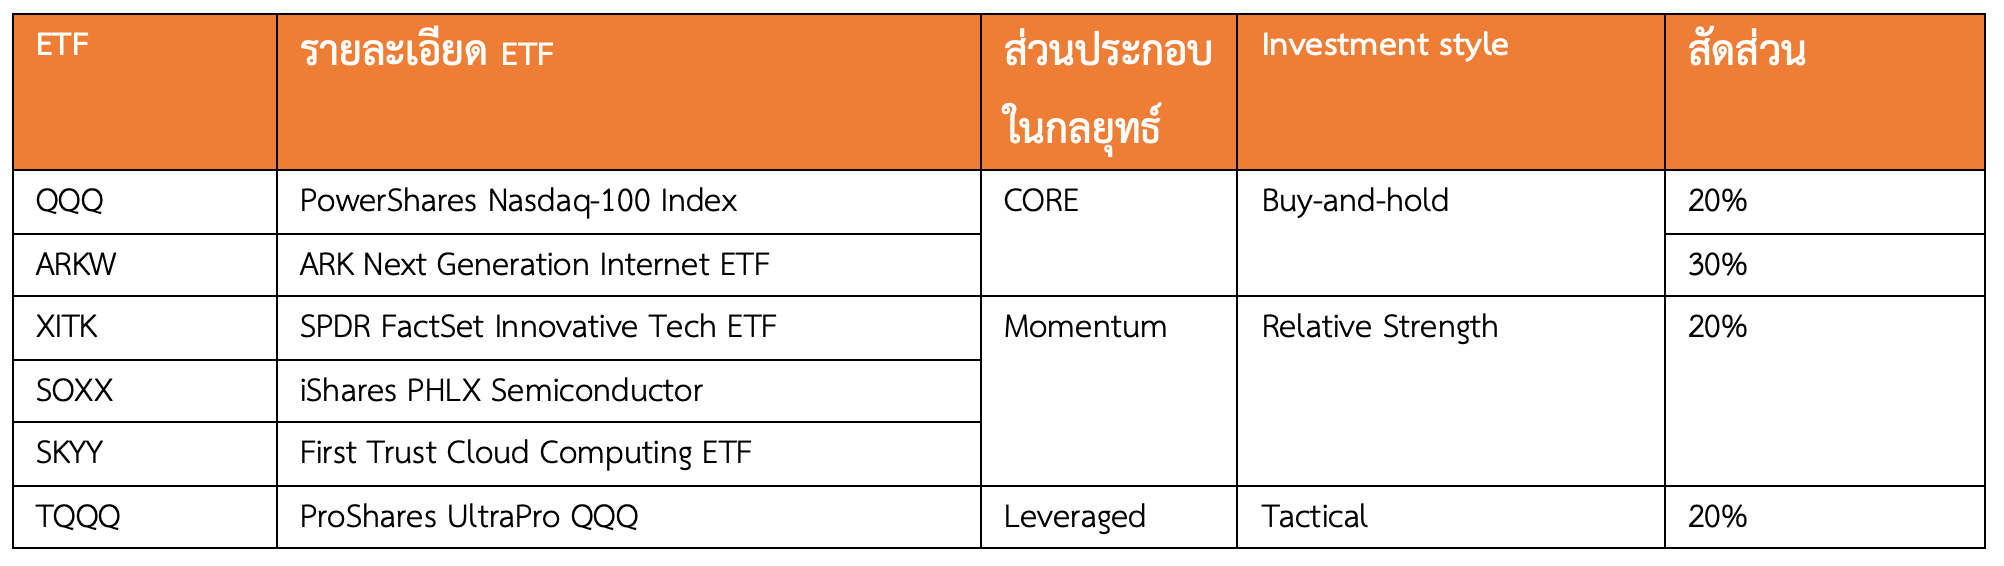 กลยุทธ์การลงทุนด้วย ETF ตอนที่ 4: “ใช้ Leveraged เพิ่มพลังทวีคูณ”